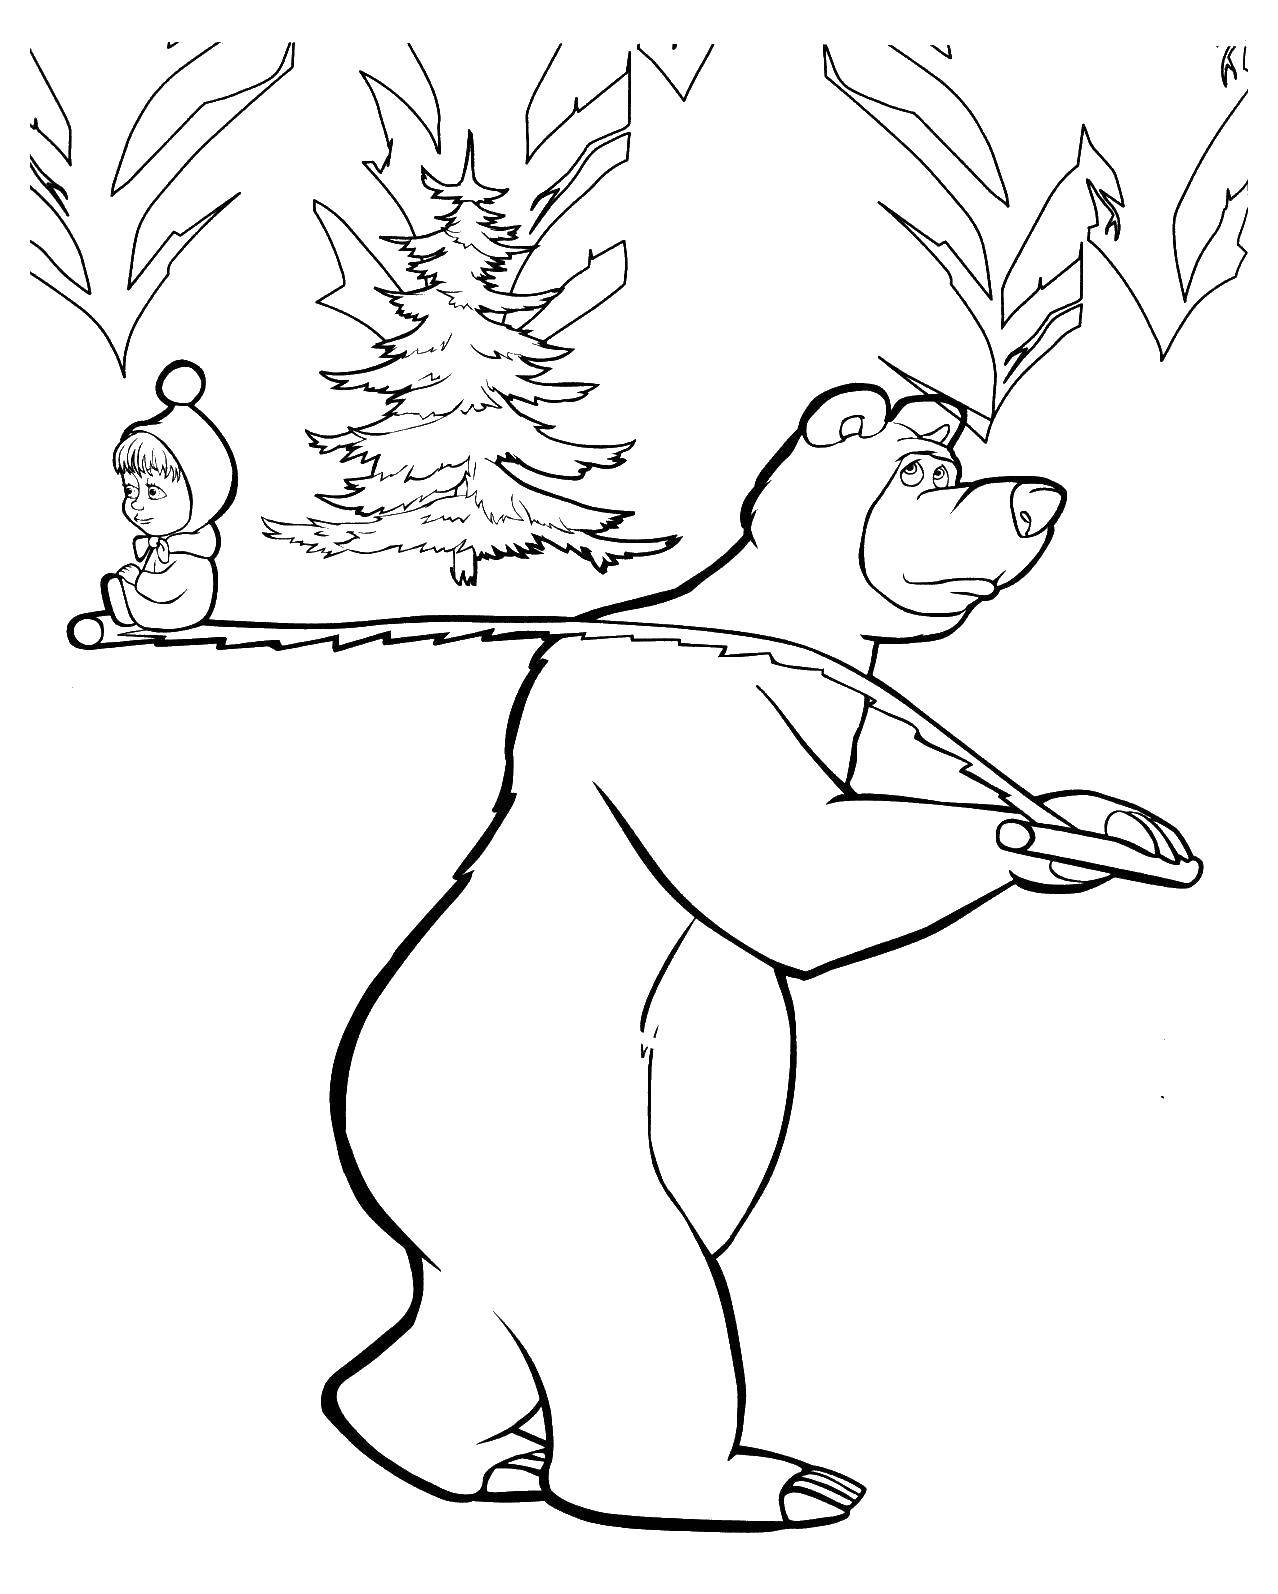 Раскраски для детей про озорную Машу из мультфильма Маша и медведь  Медведь несет машу